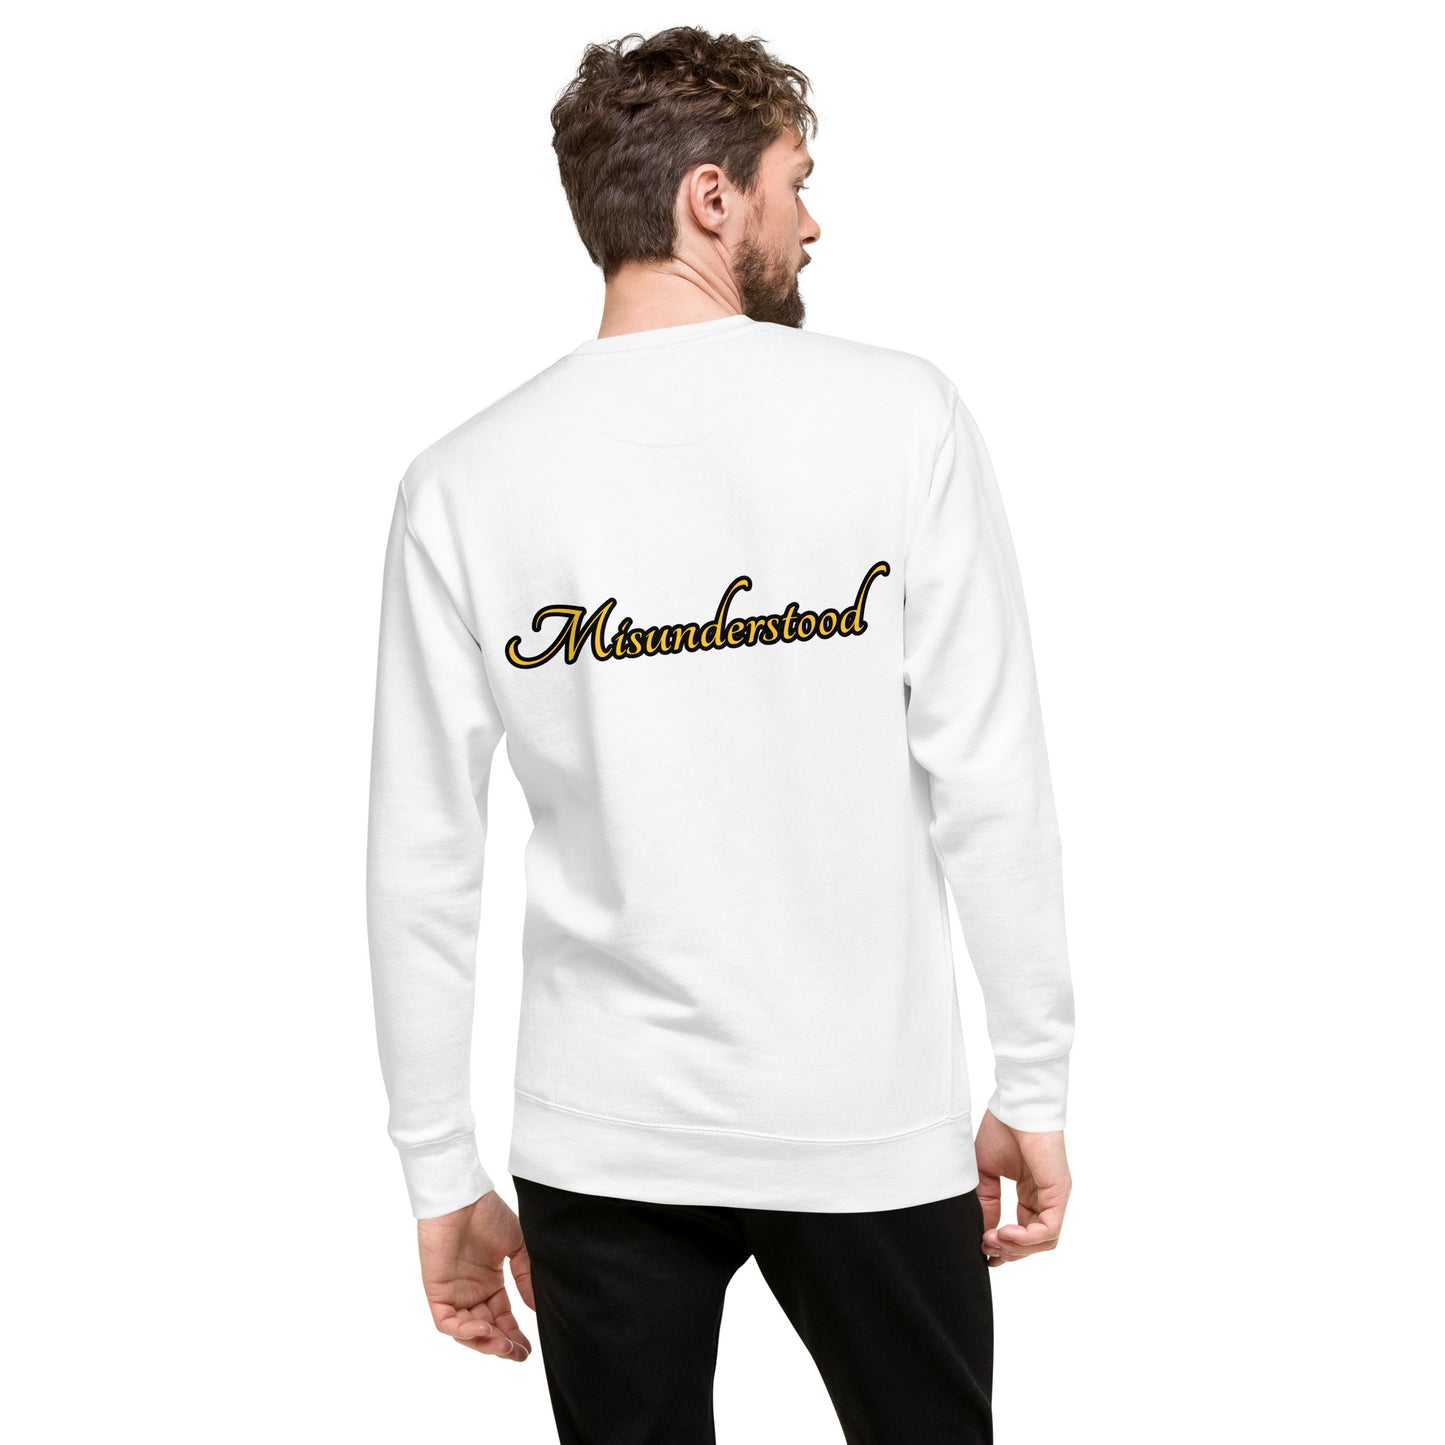 Misunderstood Unisex Premium Sweatshirt - White - Weirdly Sensational